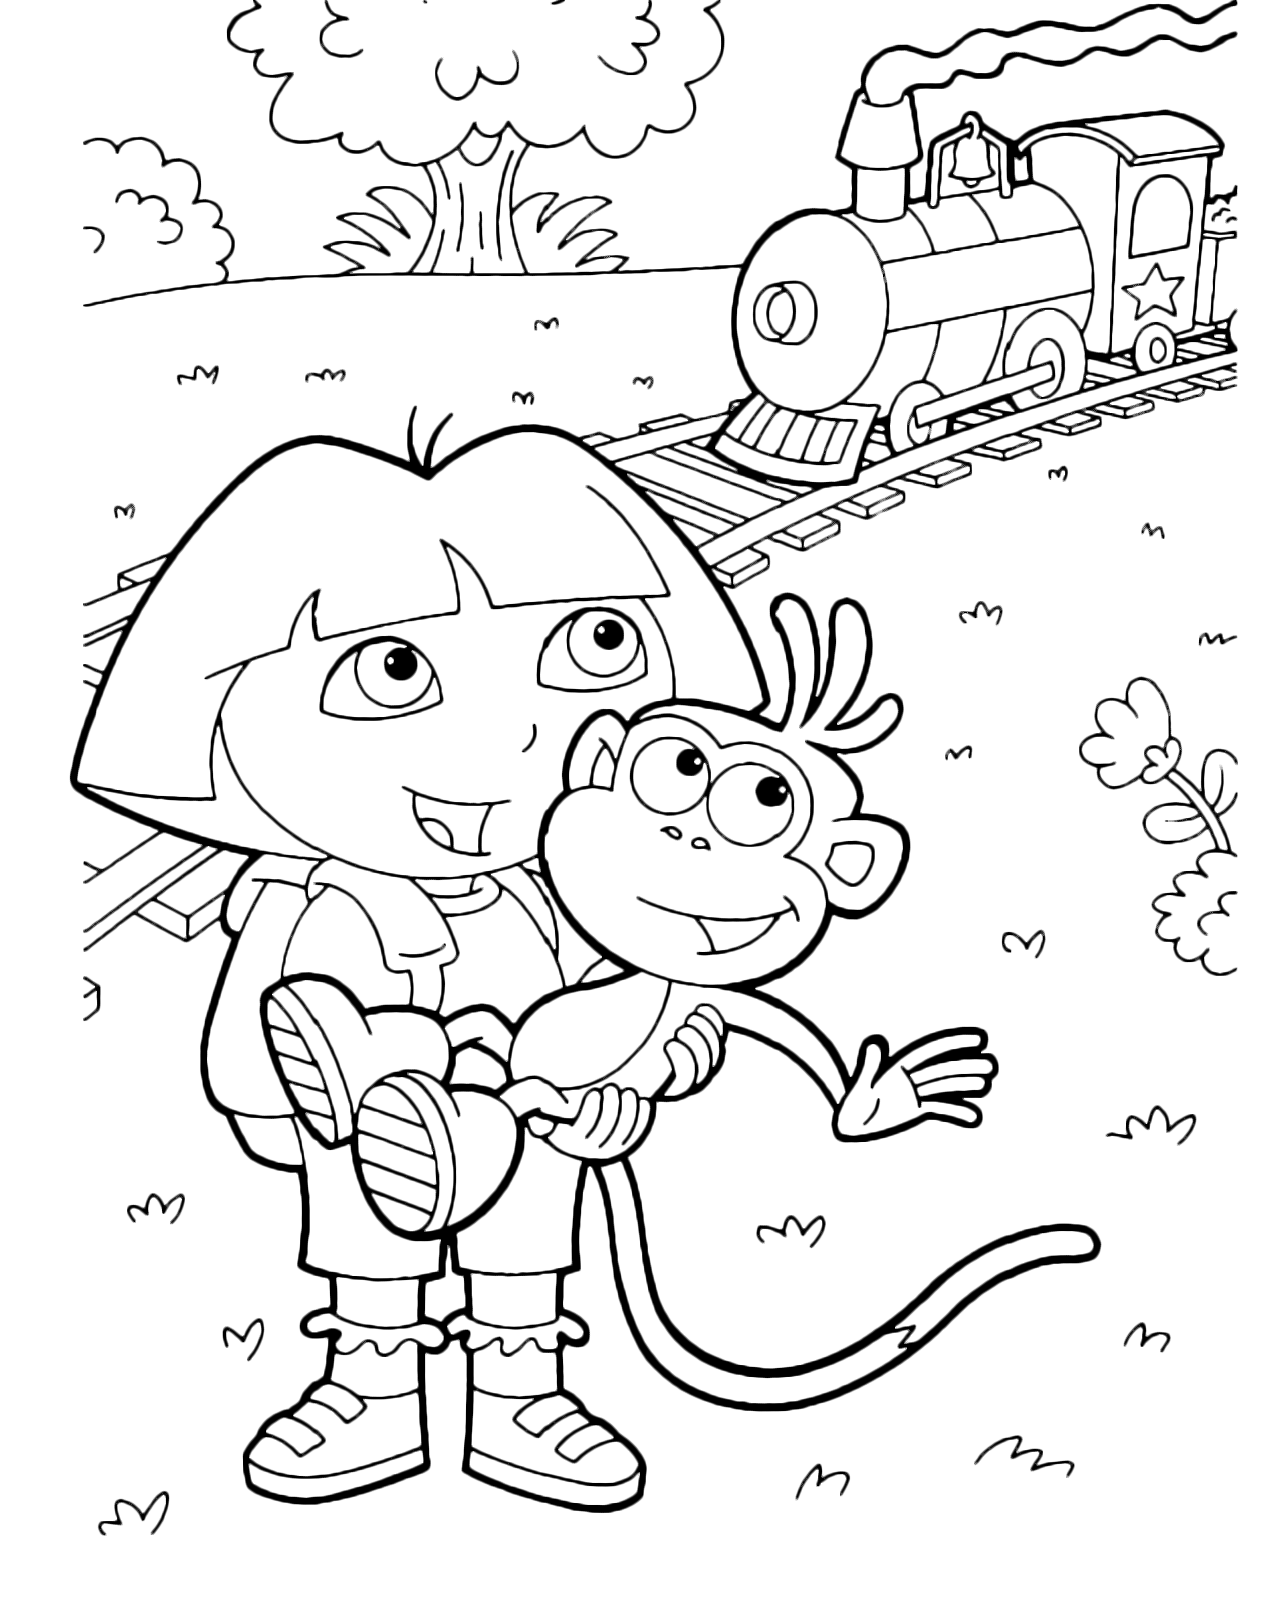 Dora l'esploratrice - Dora tiene in braccio Boots mentre passa il treno